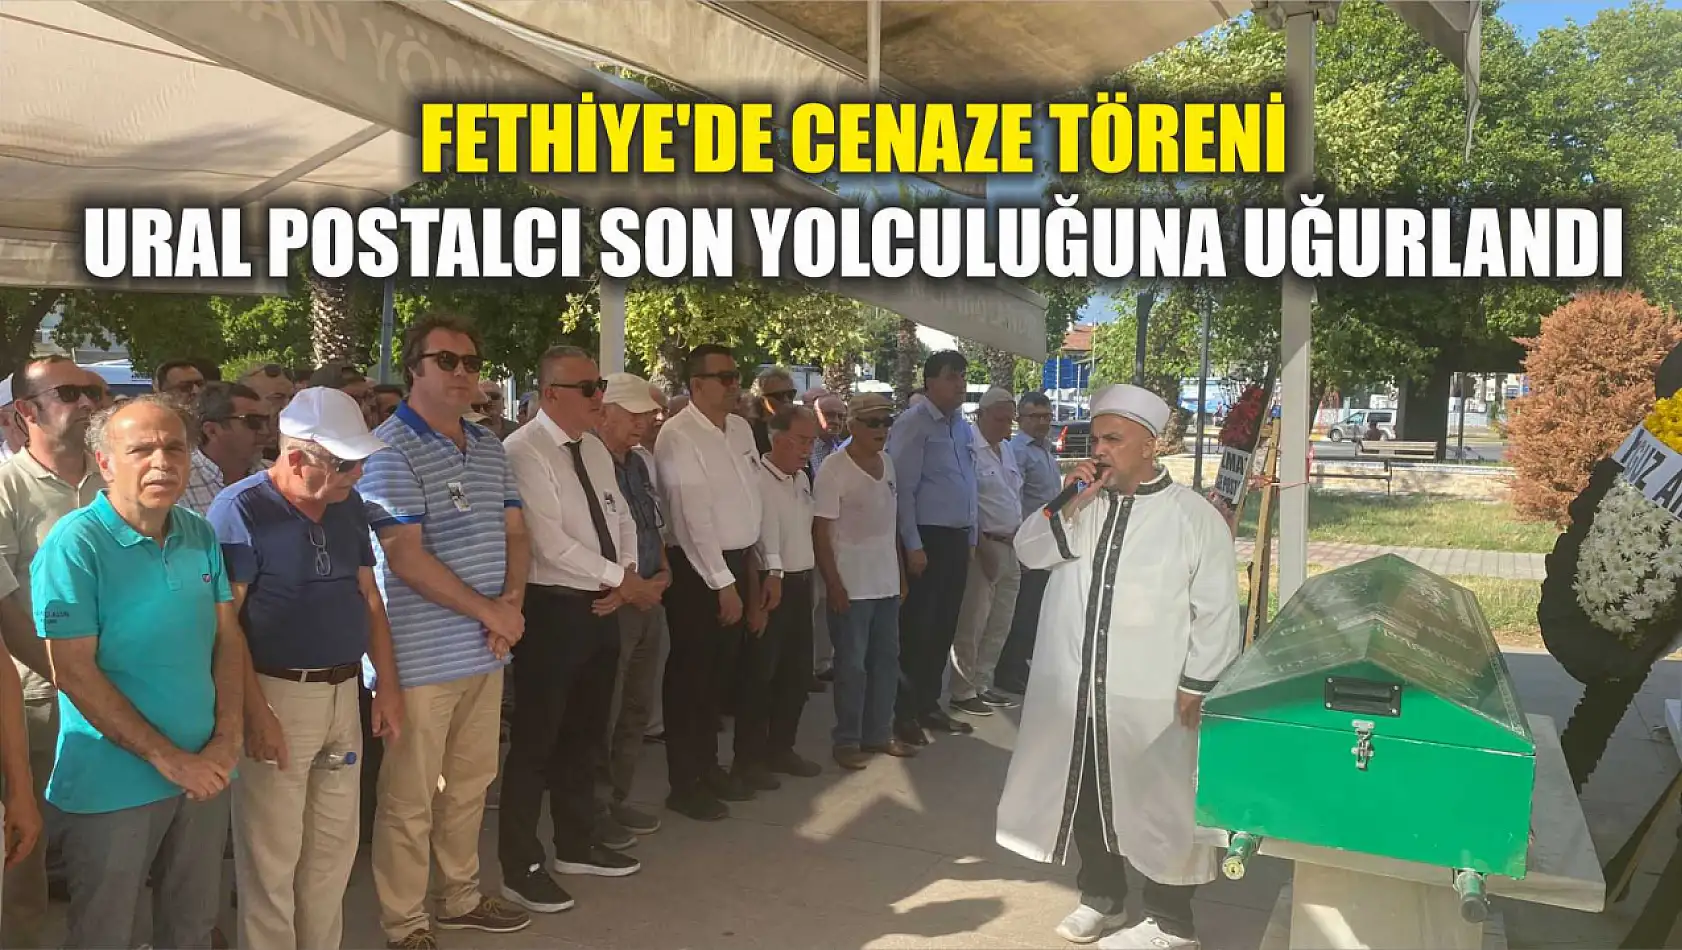 Fethiye'de Cenaze Töreni: Ural Postalcı Son Yolculuğuna Uğurlandı